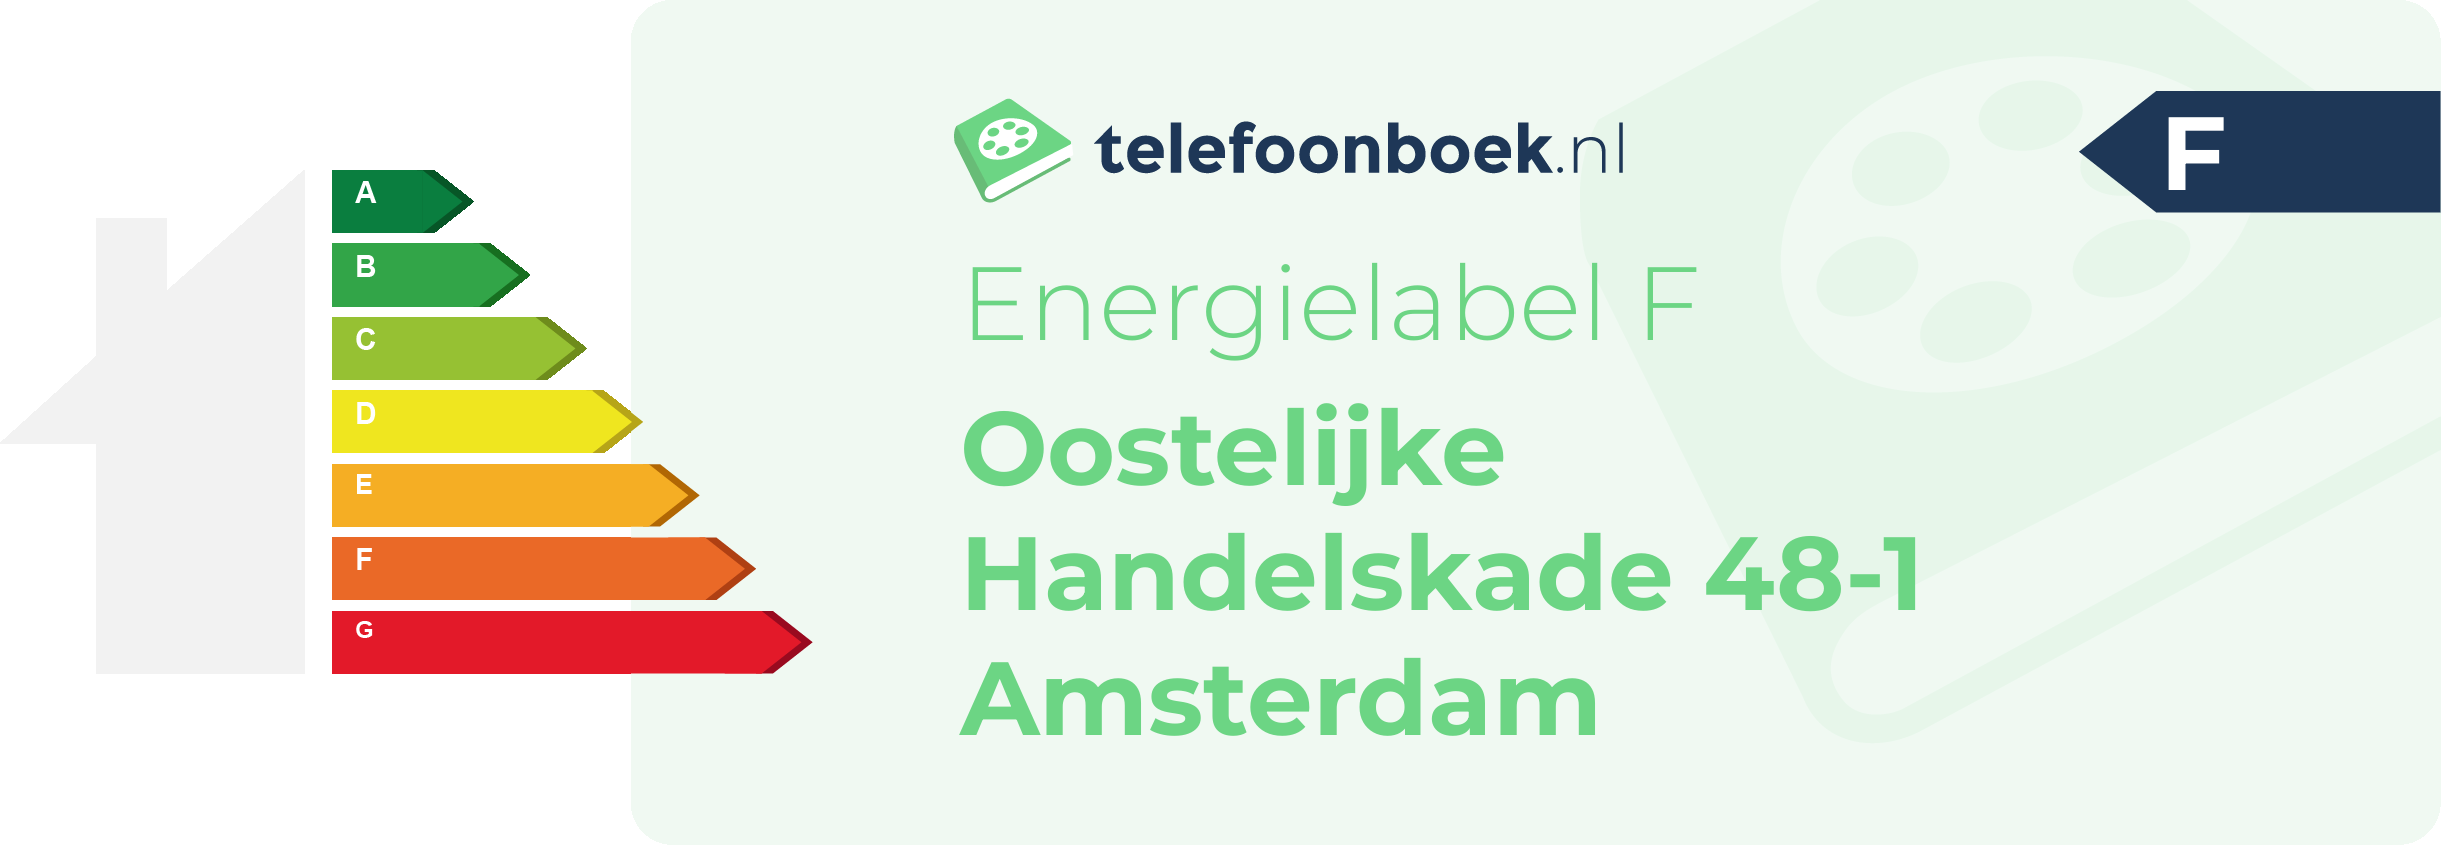 Energielabel Oostelijke Handelskade 48-1 Amsterdam